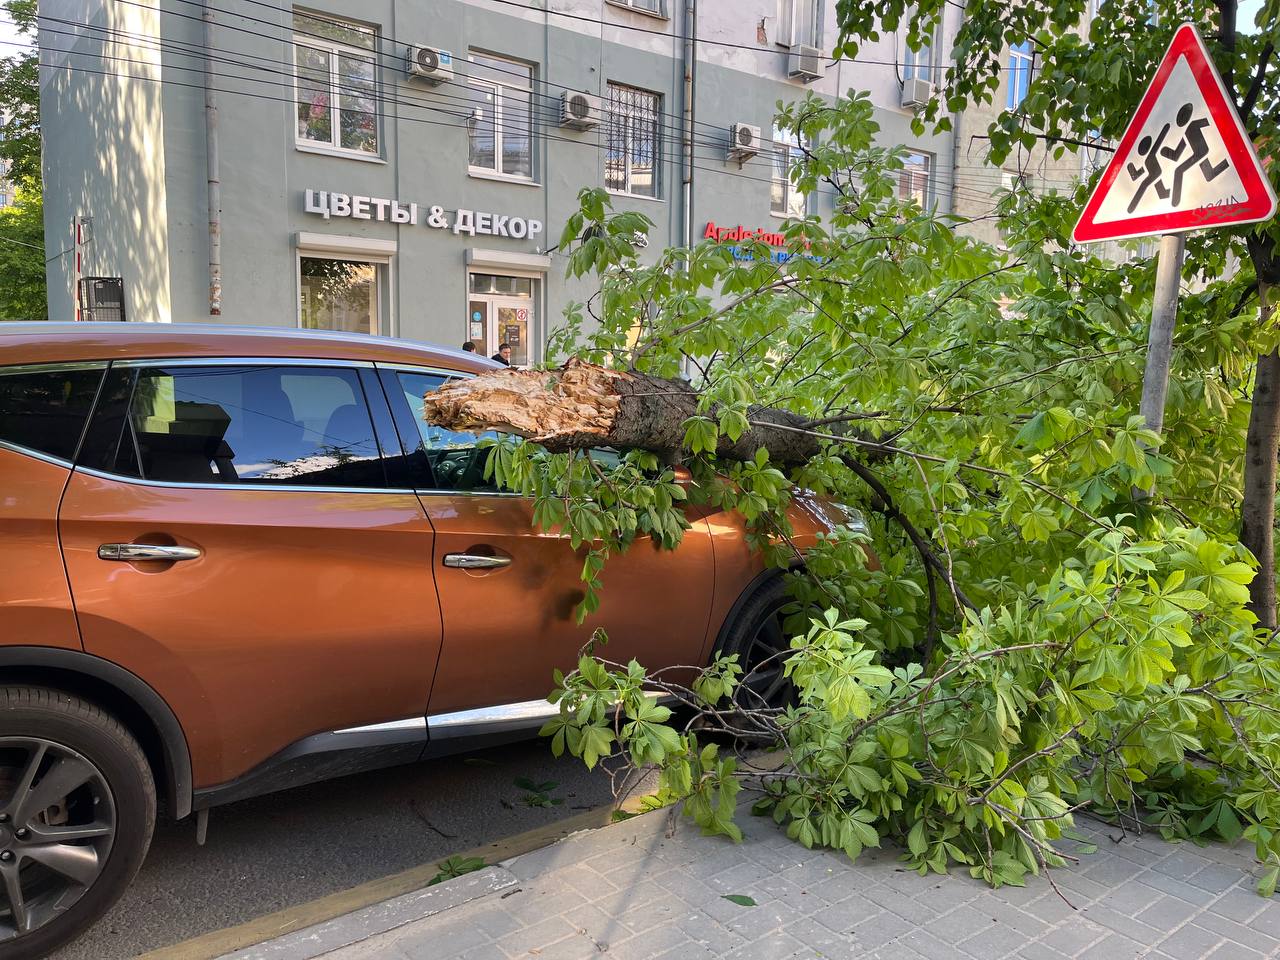 Дерево рухнуло на автомобиль в центре Воронежа